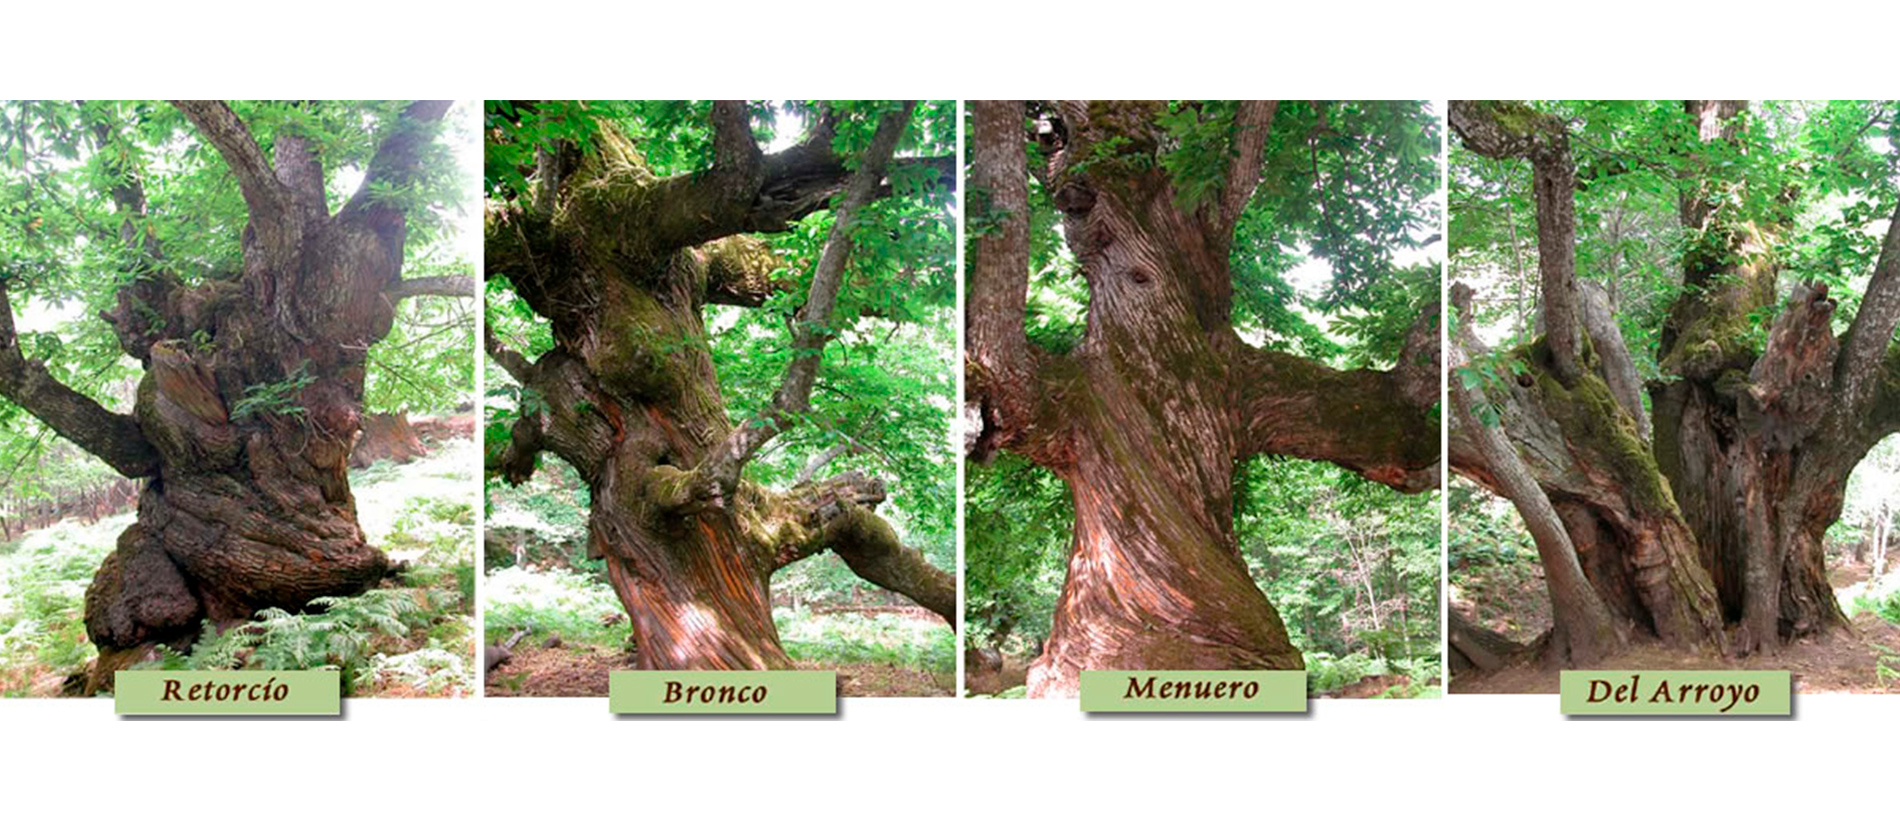 cuatro tipos de arboles milenario con troncos retorcidos, bronco, menuero, y del arroyo